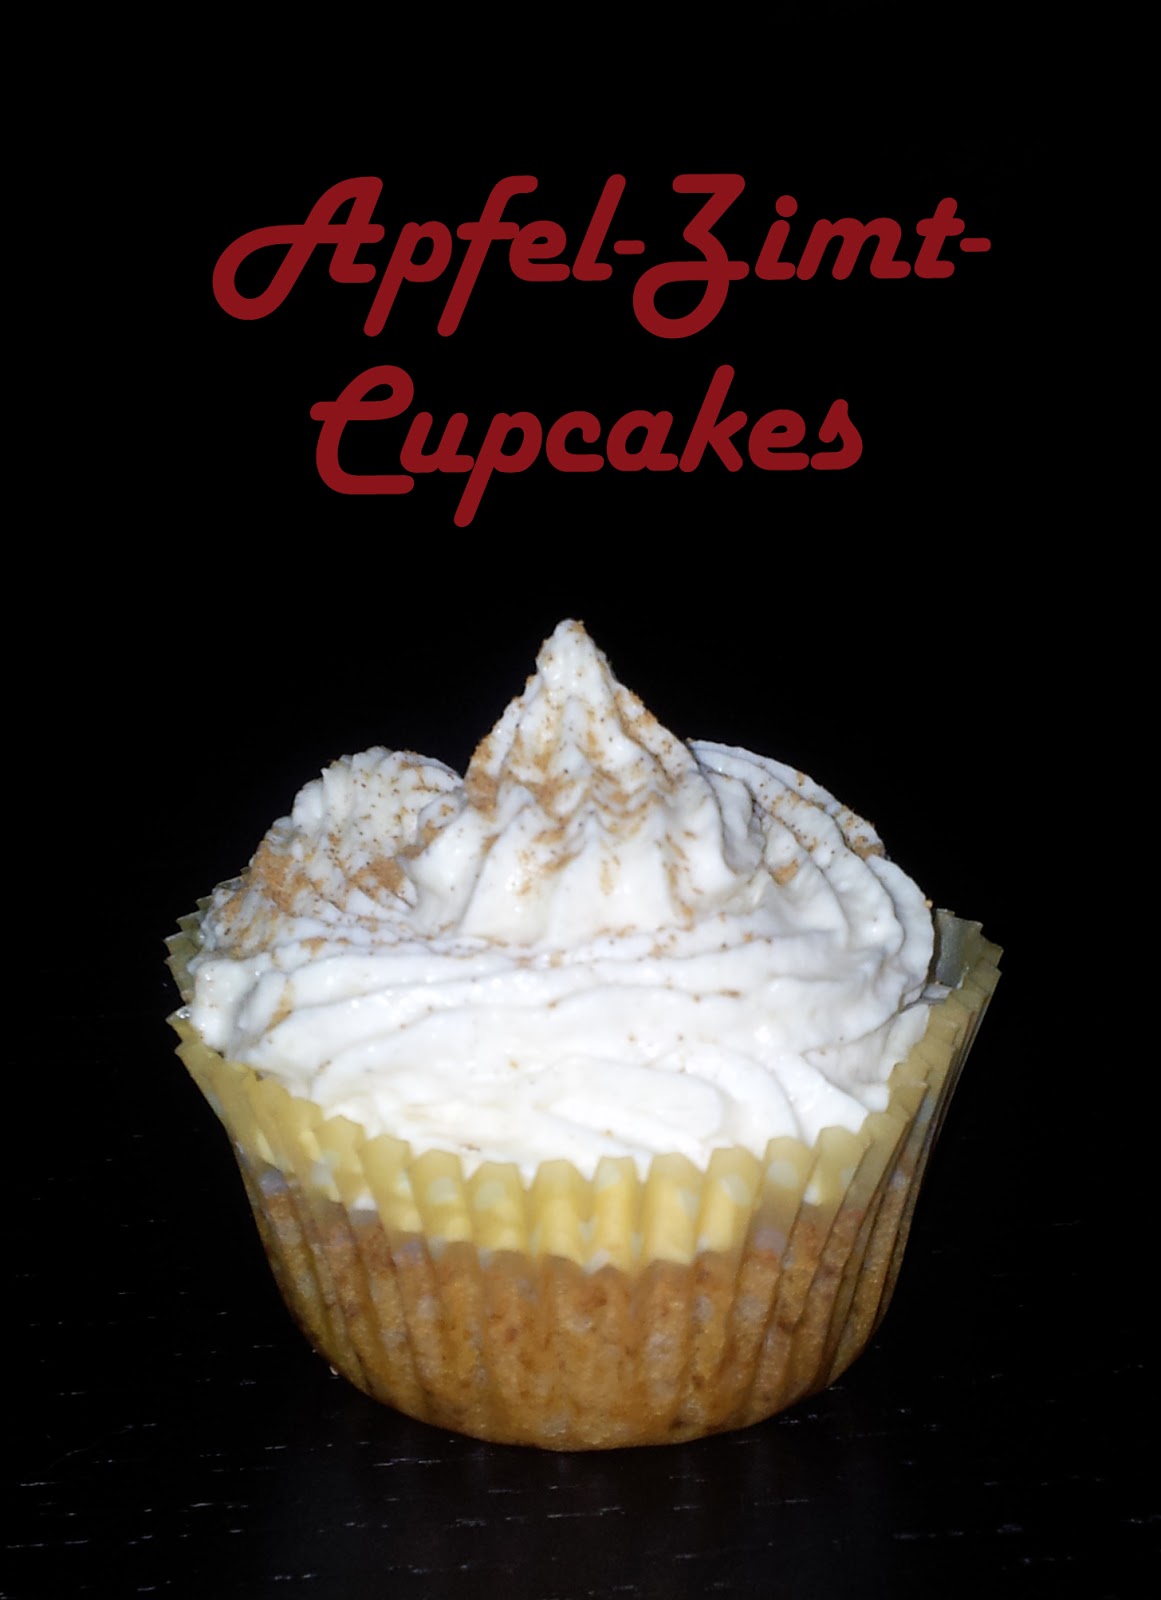 Kittys Küche: Apfel-Zimt-Cupcakes